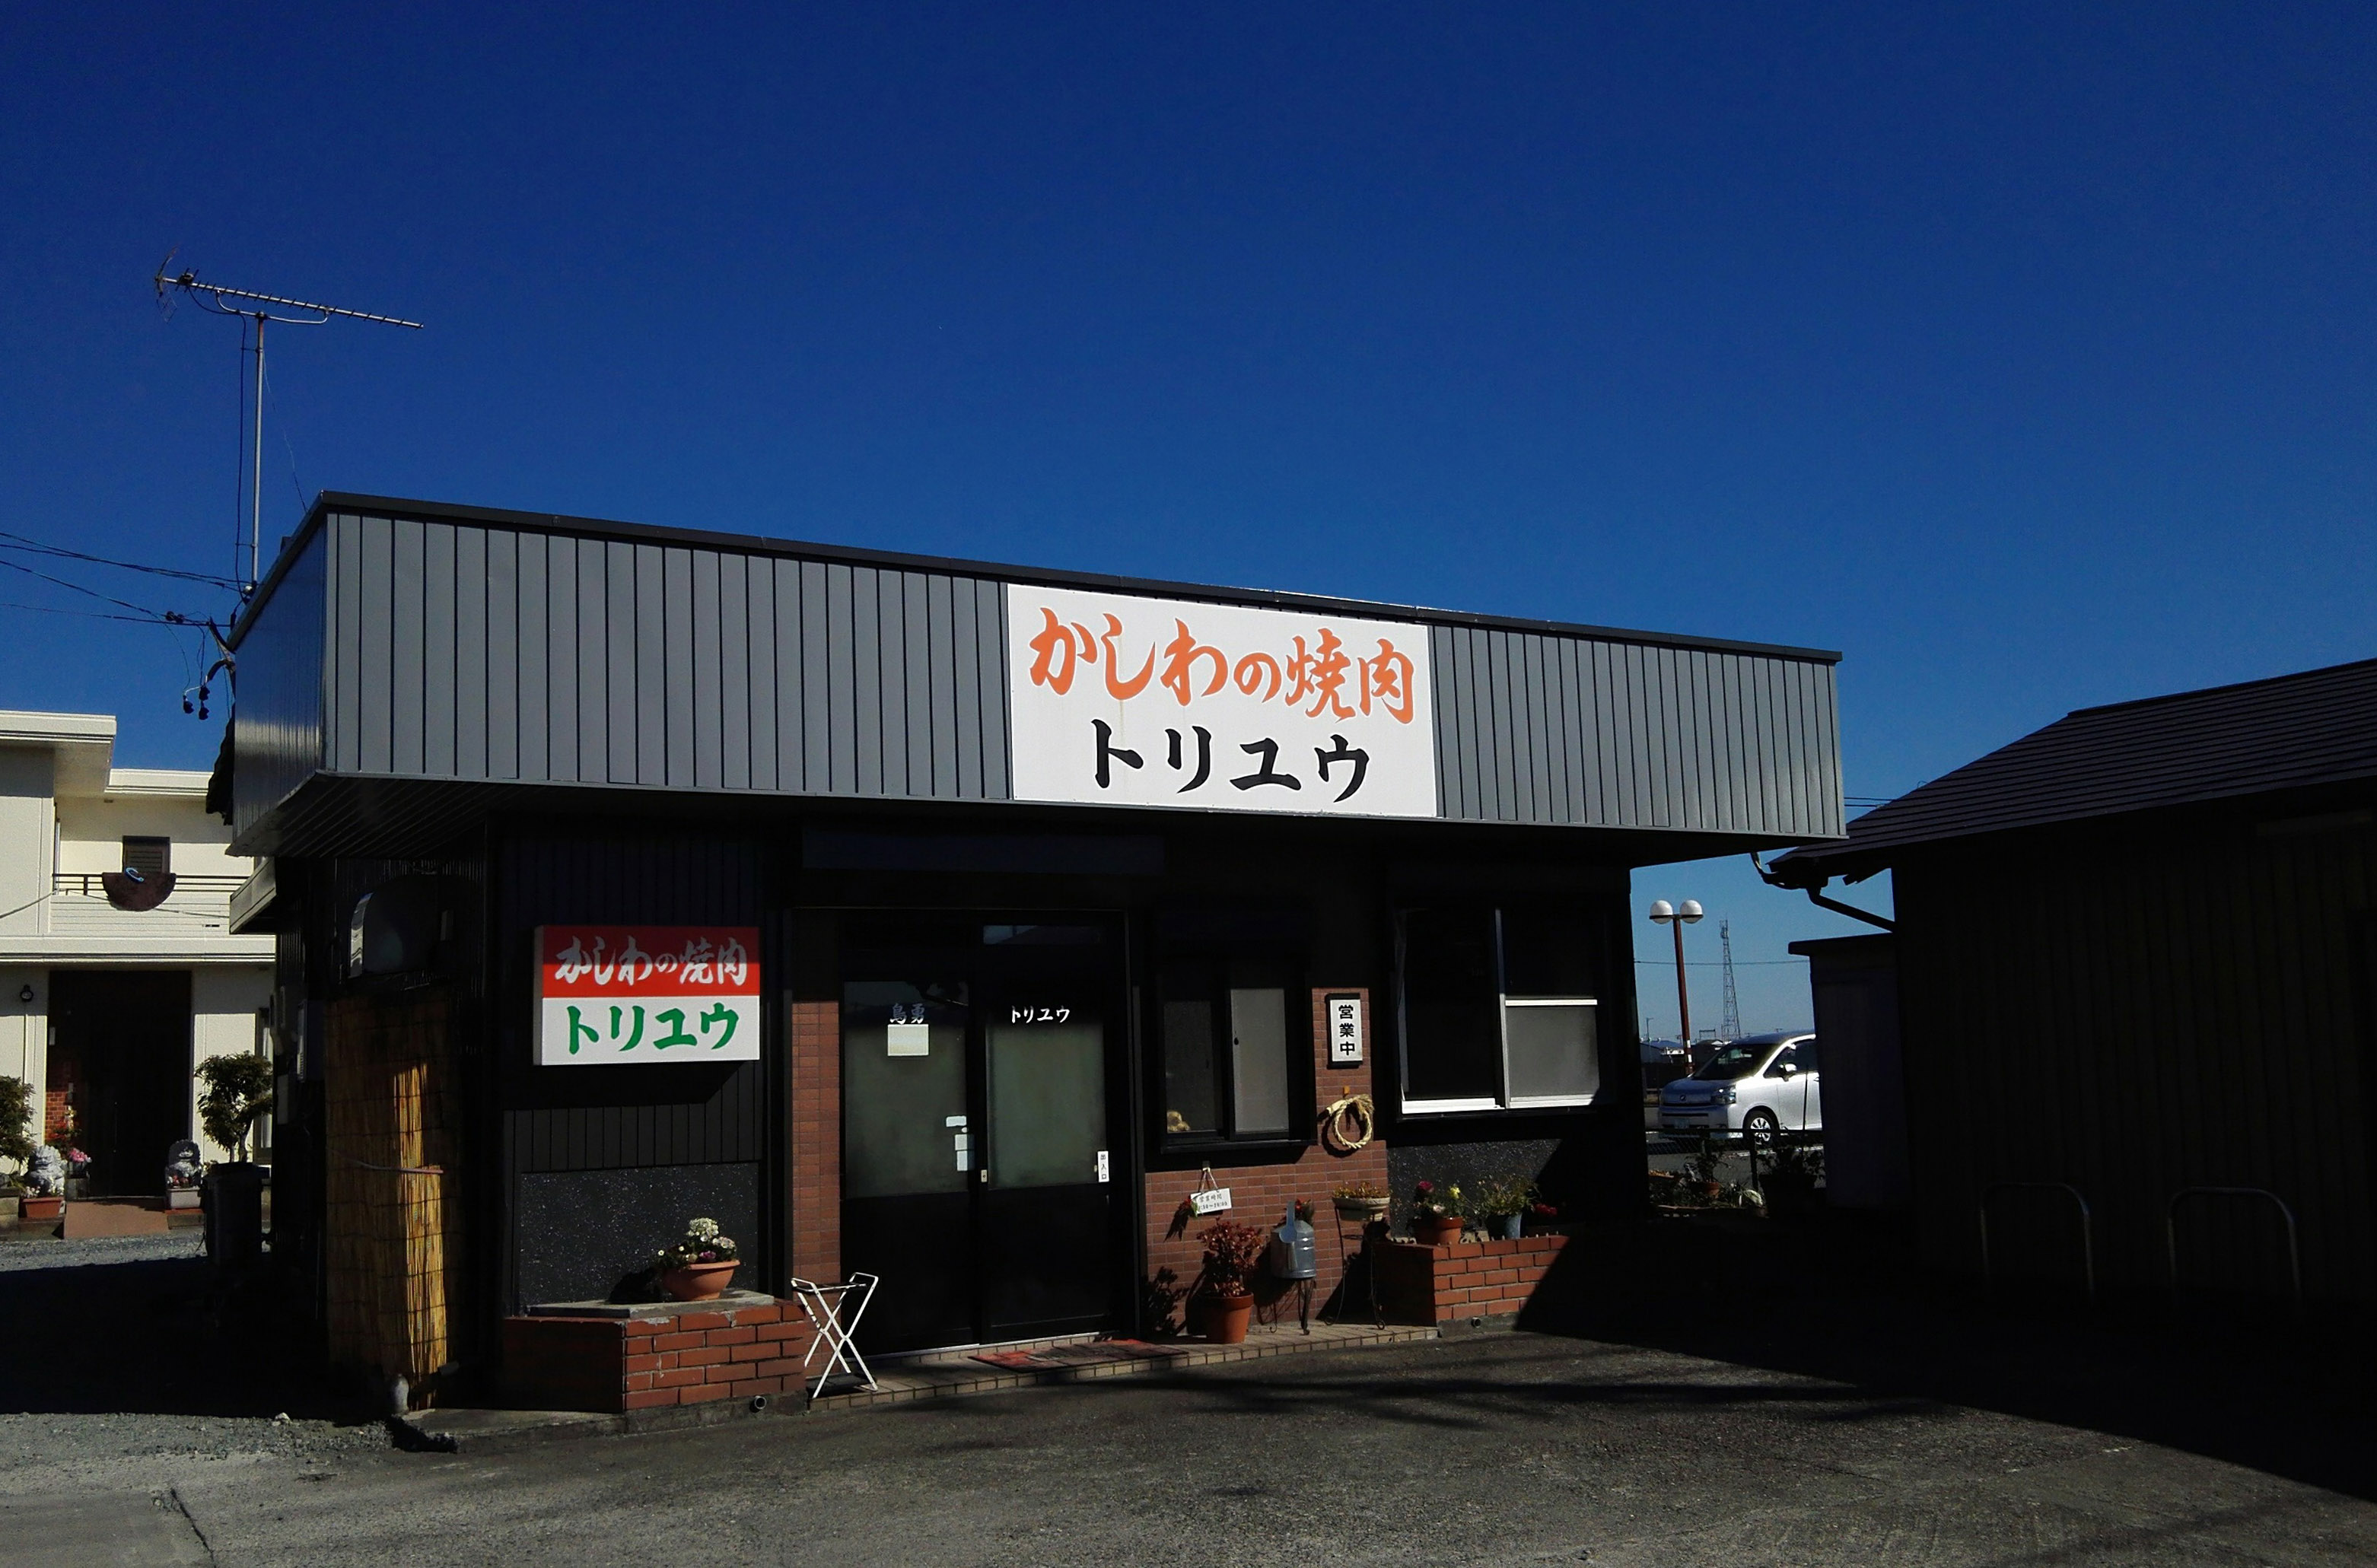 松阪市上川町にある「トリユウ」。開店時間は11:30～20:00。月曜定休。